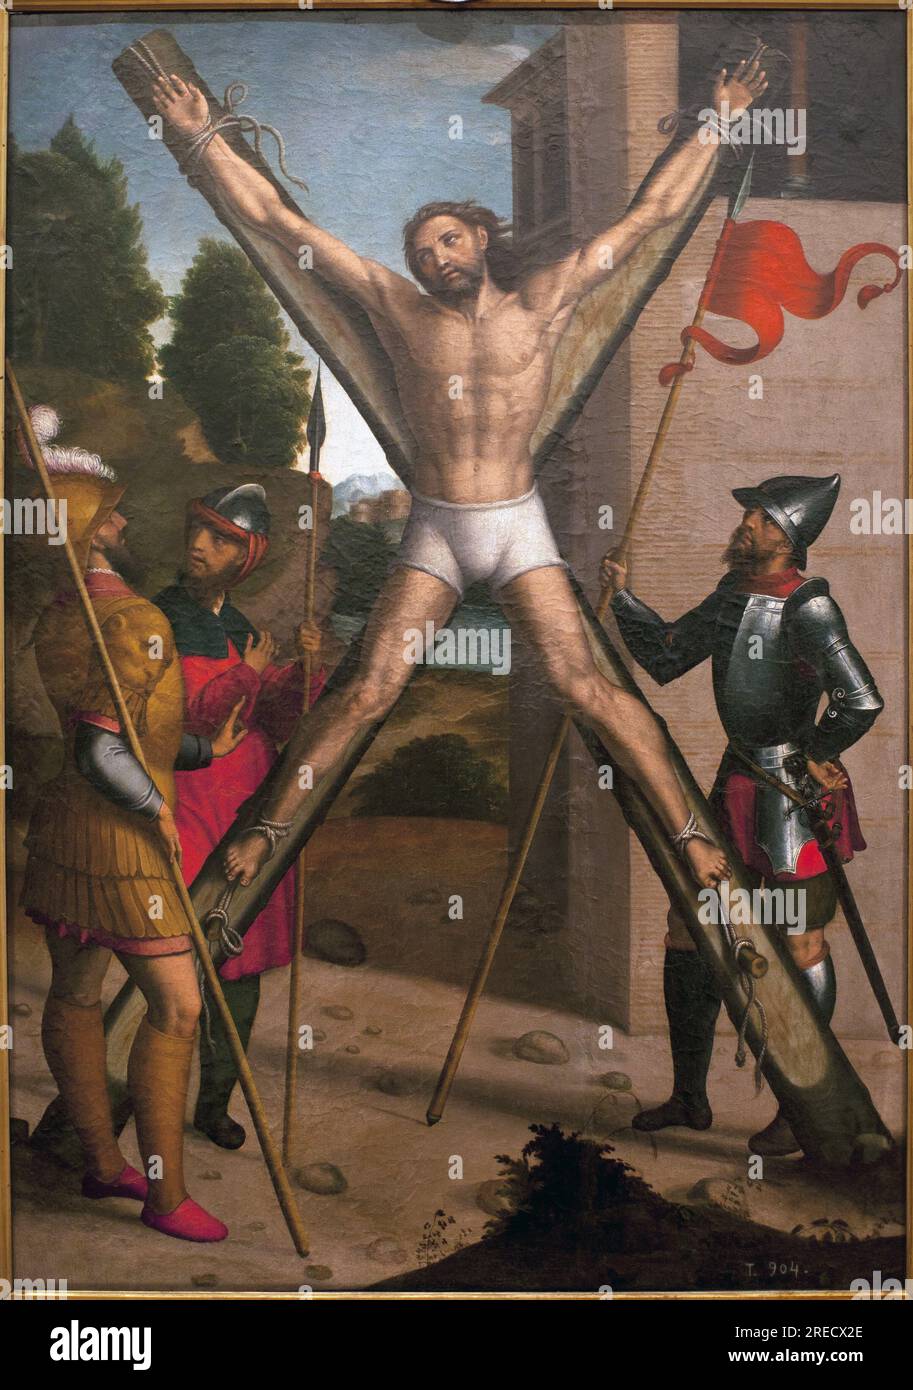 Le martyr de Saint Andre. Peinture de Juan Correa de Vivar (vers 1510-1566), huile sur bois, 1440-1445. Musee de Santa Cruz de Tolede, Espagne. Stock Photo